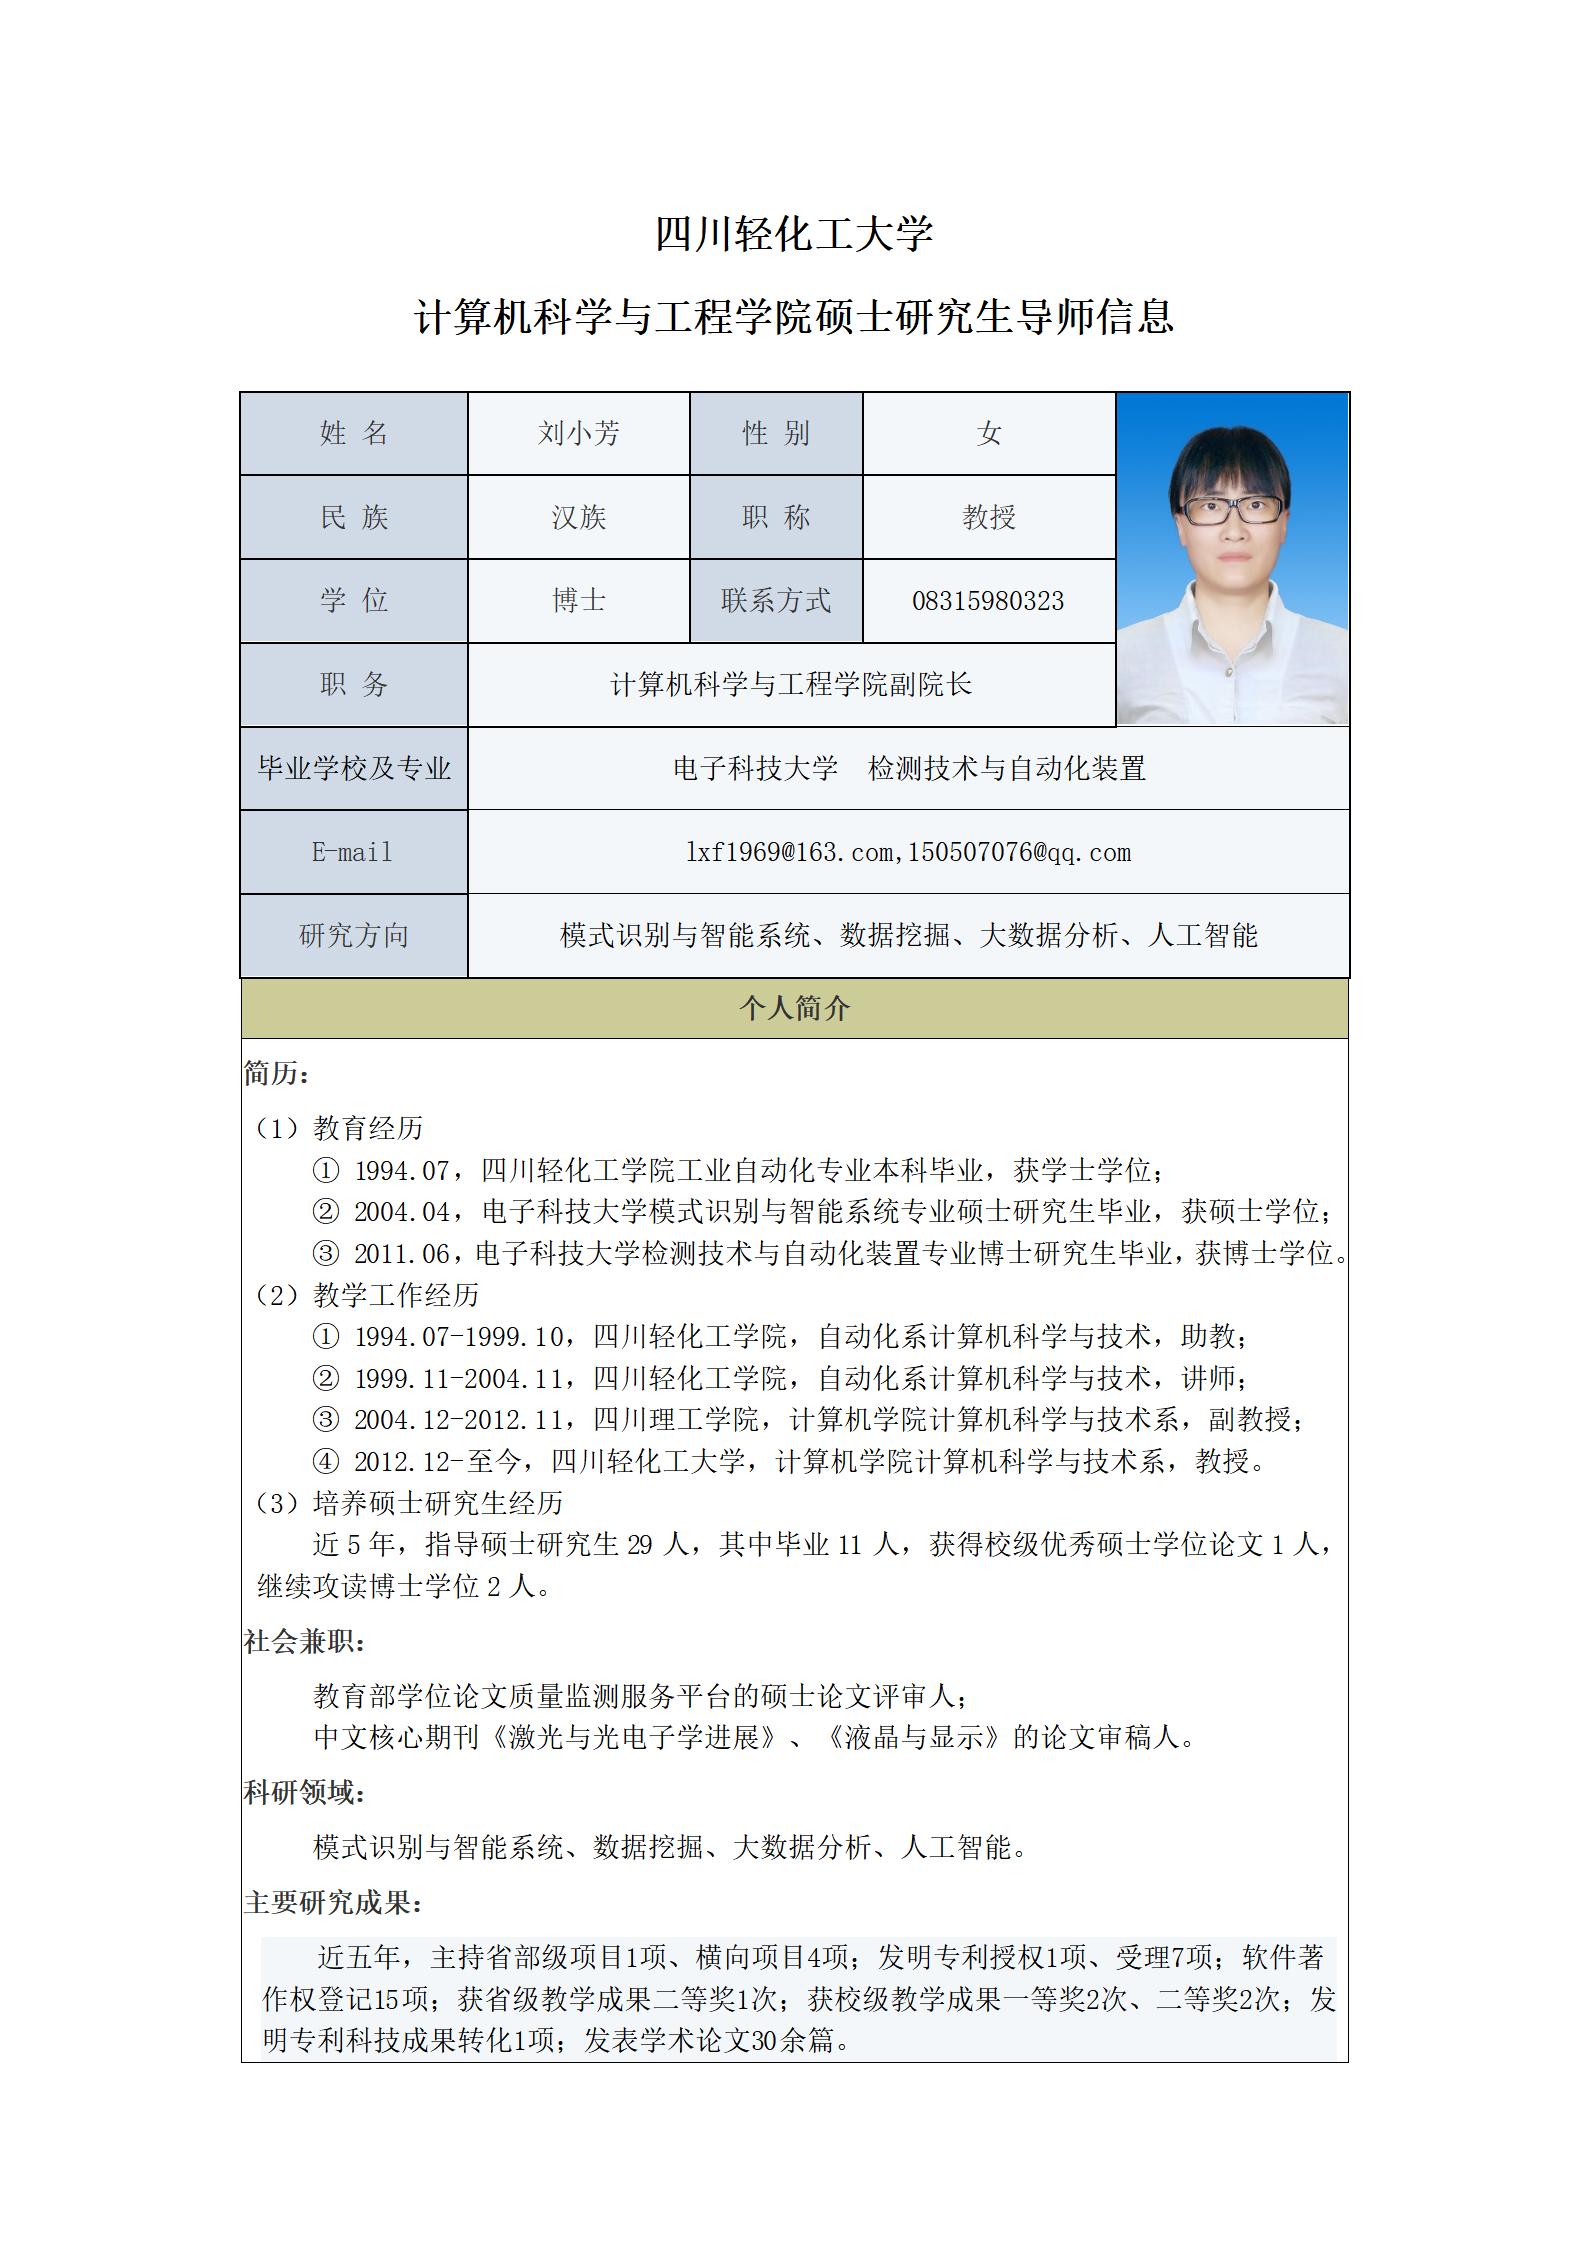 刘小芳-2023计算机科学与工程学院硕士生导师信息表_01.jpg